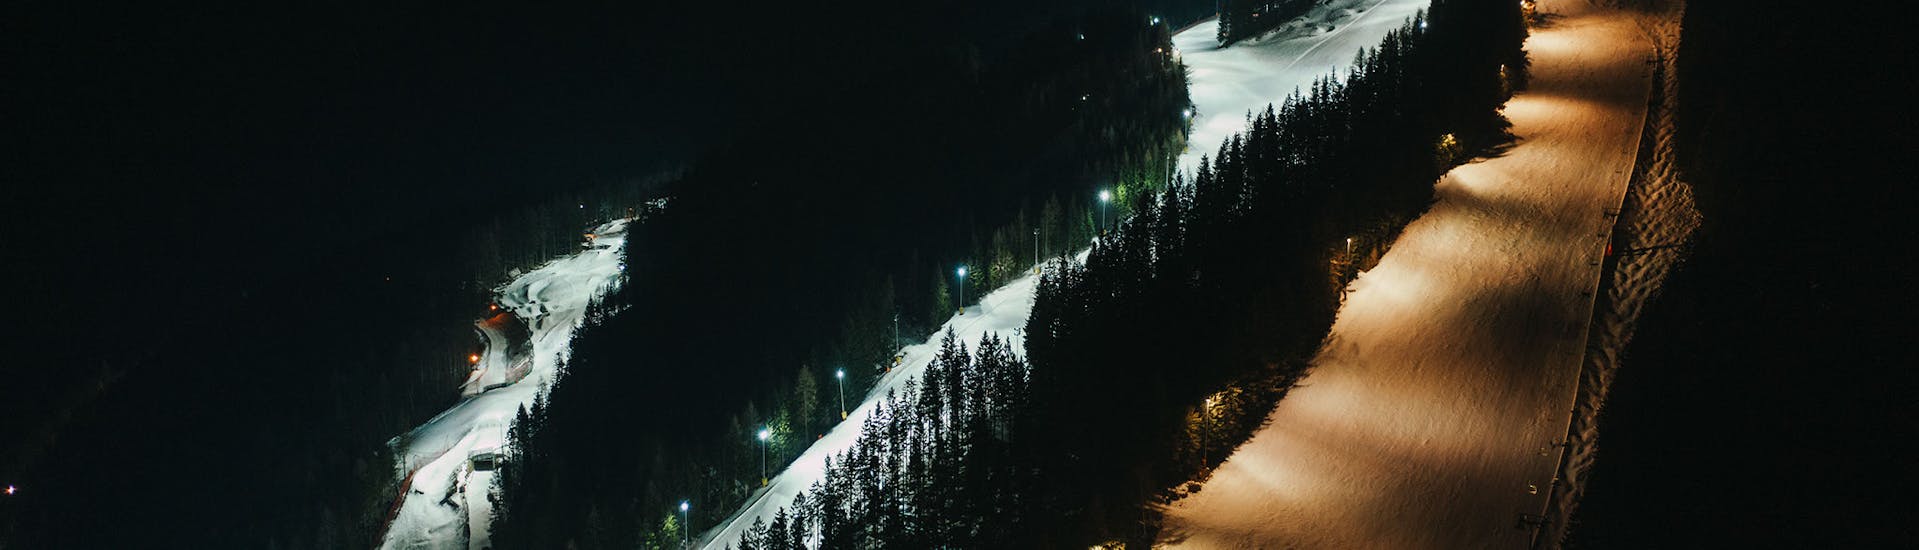 Eine spektakuläre Nachtpiste während dem Privaten Snowboardkurs für Kinder & Erwachsene - Nachtpiste mit Schneesportschule Zauberberg Semmering.